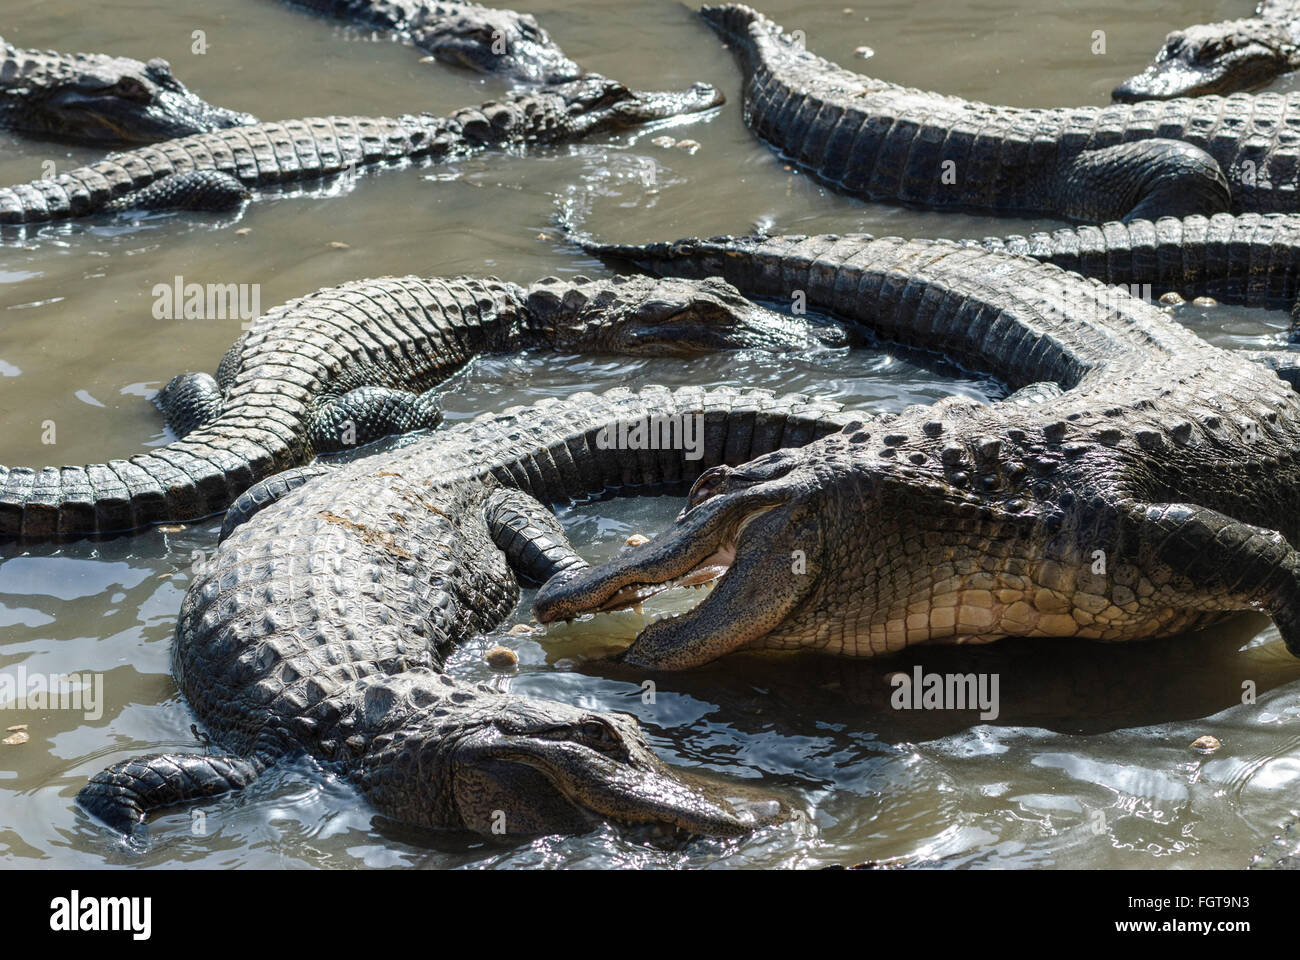 Un gruppo di comune (americana) alligatori basking/ lotta simulata in acque poco profonde. Foto Stock